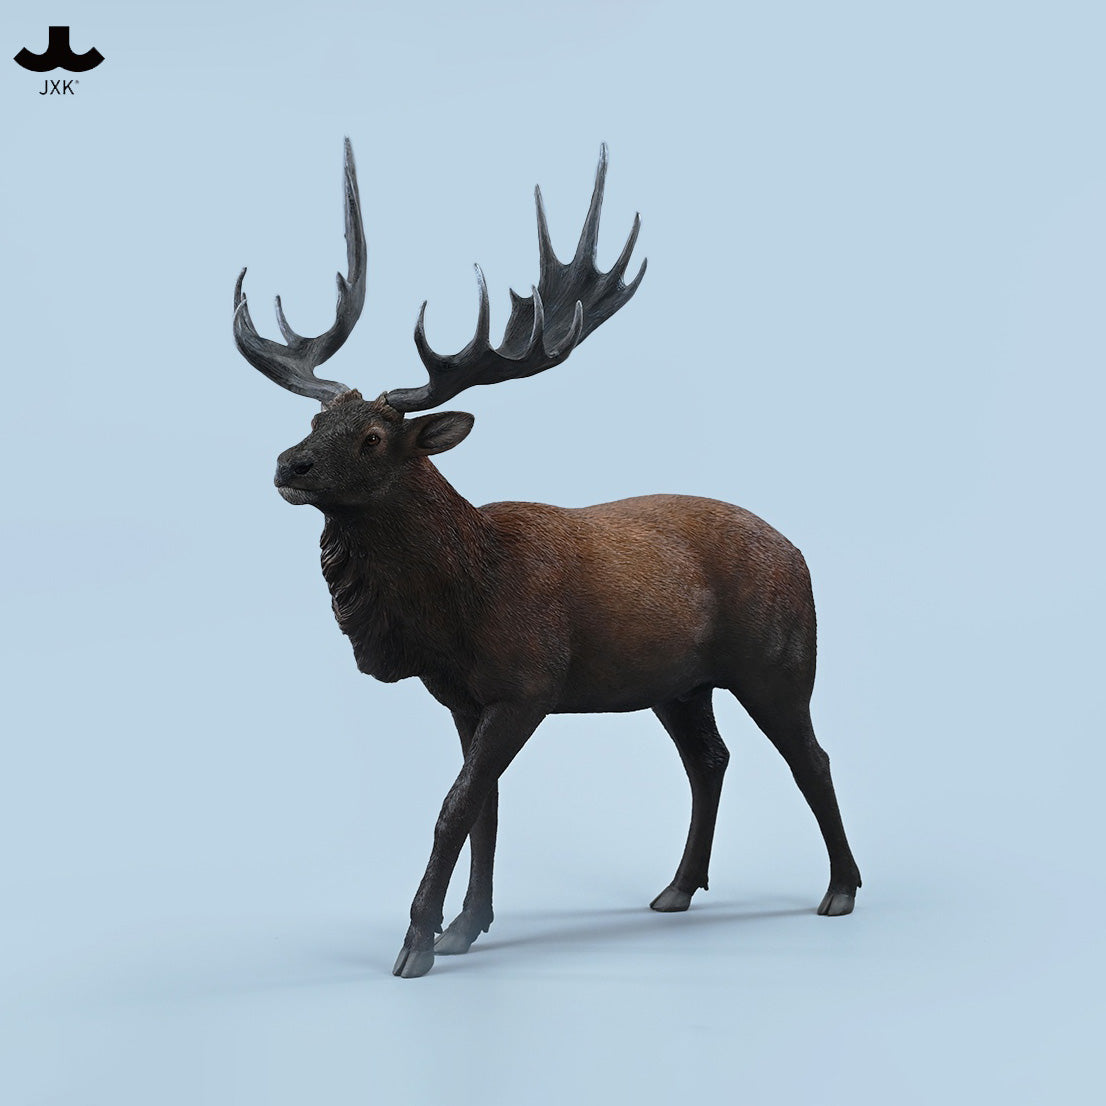 JXK Studio - JXK210A - Reindeer (1/6 Scale) - Marvelous Toys